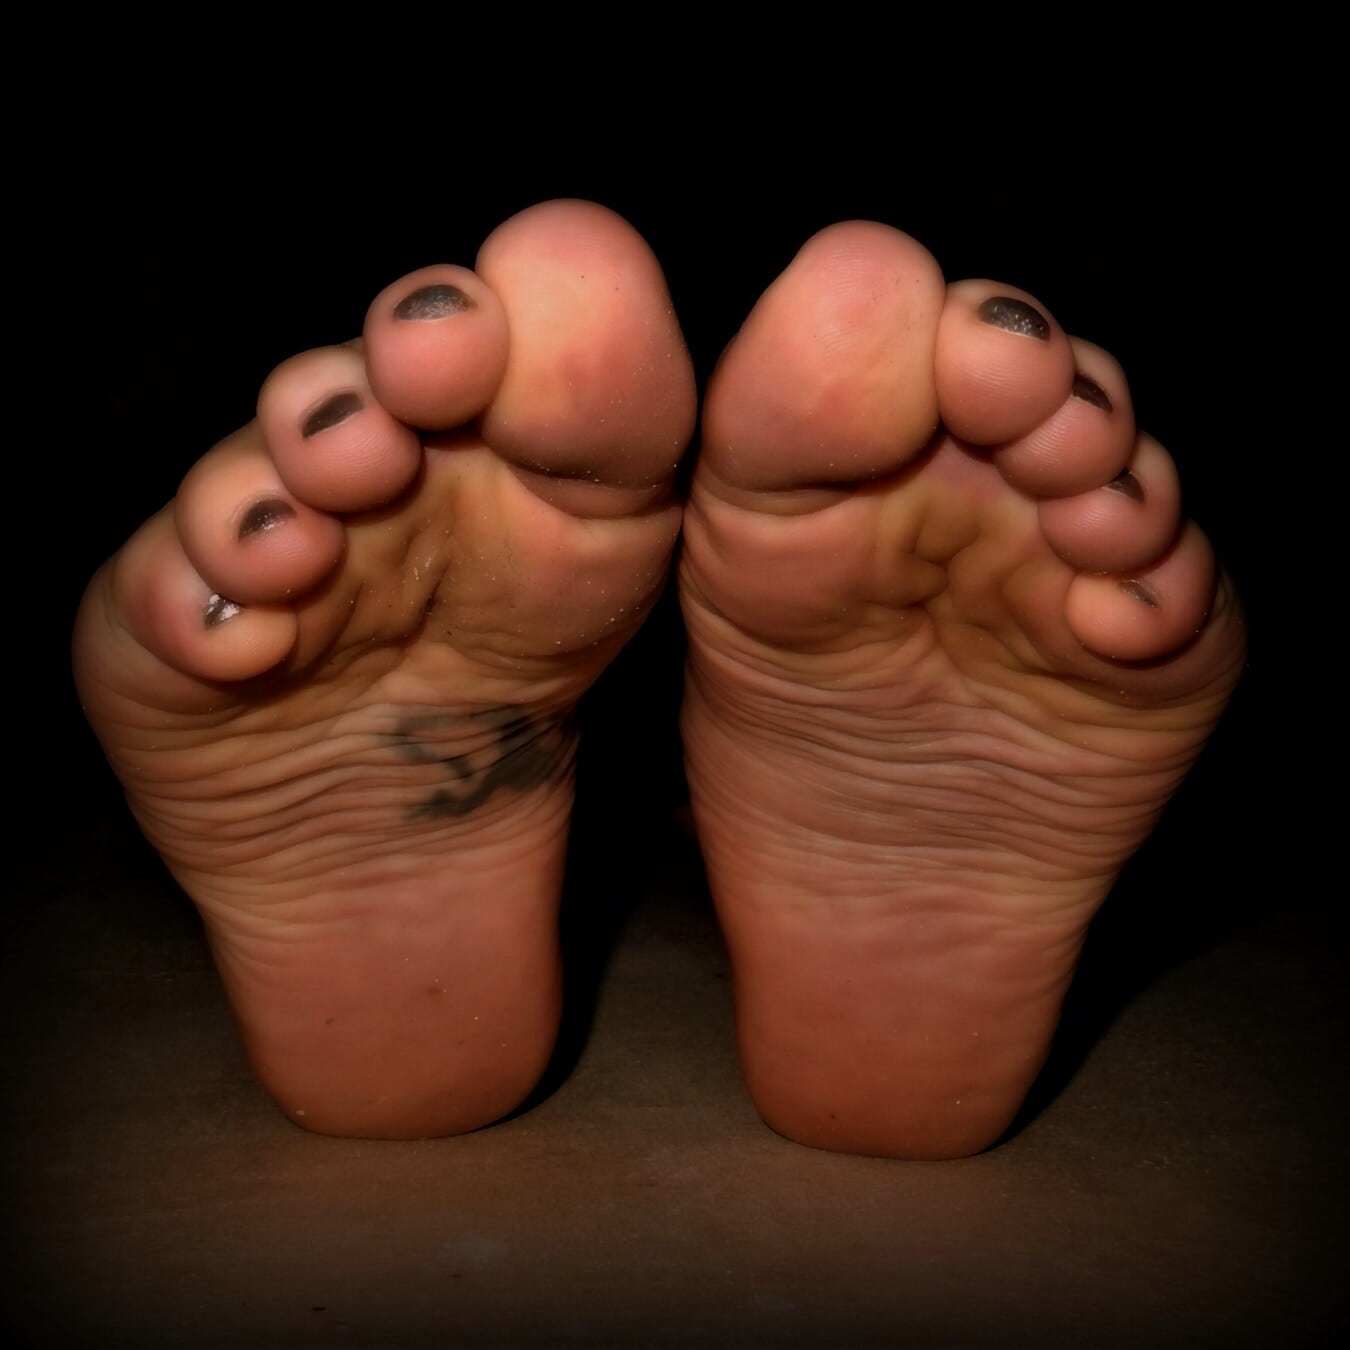 pies descalzos, pies, esmalte de uñas, piel, cuidado de la piel, tatuaje, dedo del pie, pie, oscuridad, humano